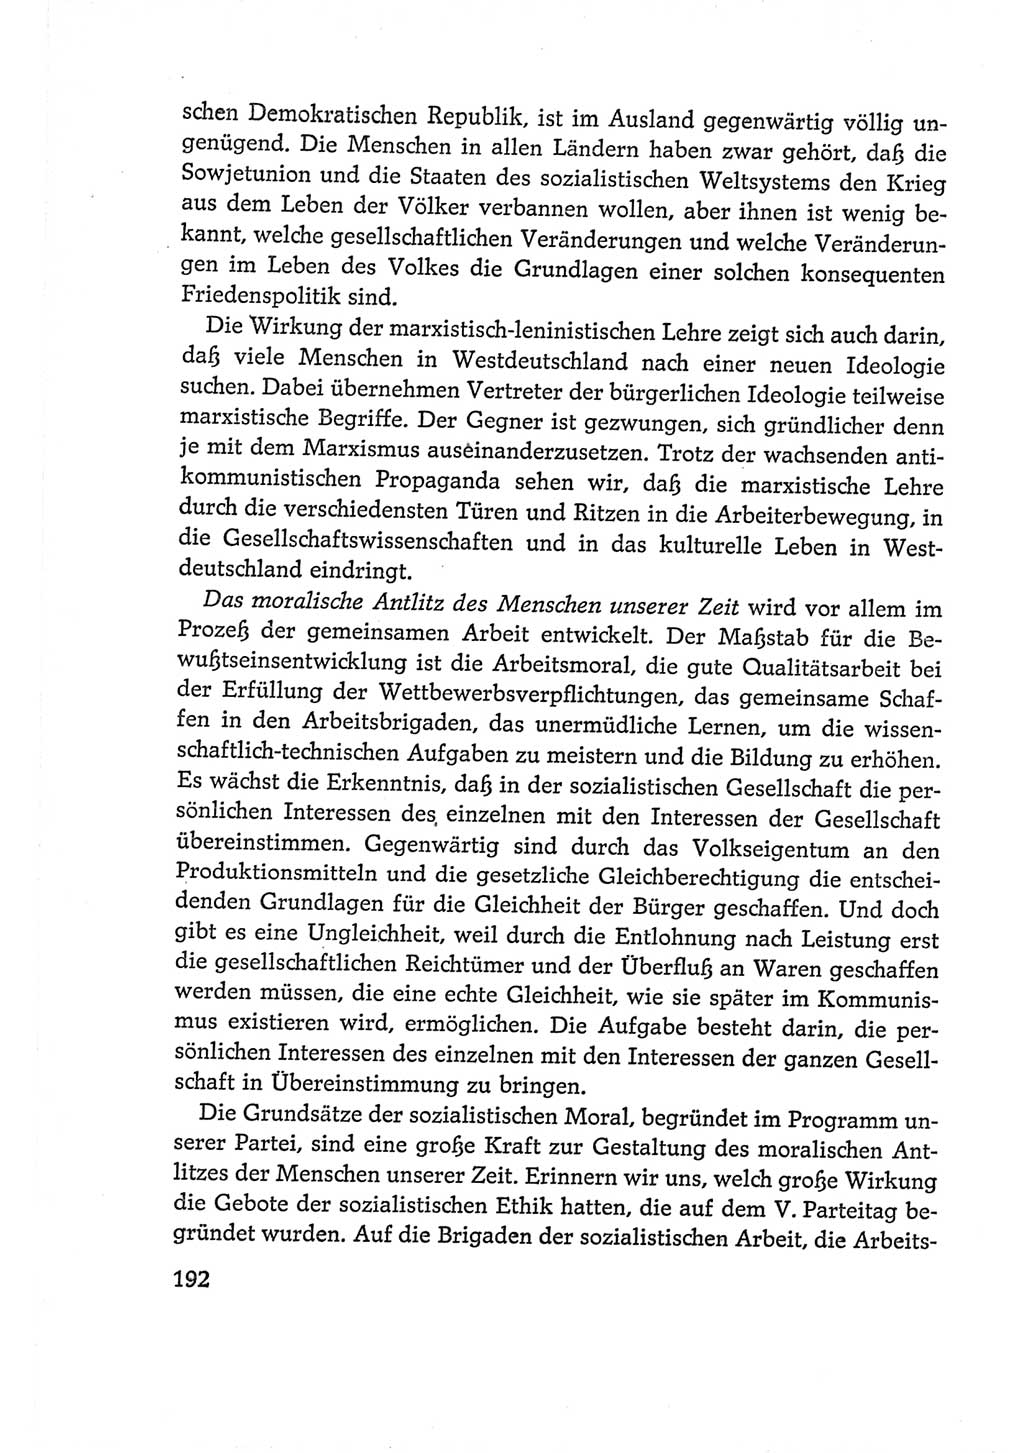 Protokoll der Verhandlungen des Ⅵ. Parteitages der Sozialistischen Einheitspartei Deutschlands (SED) [Deutsche Demokratische Republik (DDR)] 1963, Band Ⅰ, Seite 192 (Prot. Verh. Ⅵ. PT SED DDR 1963, Bd. Ⅰ, S. 192)